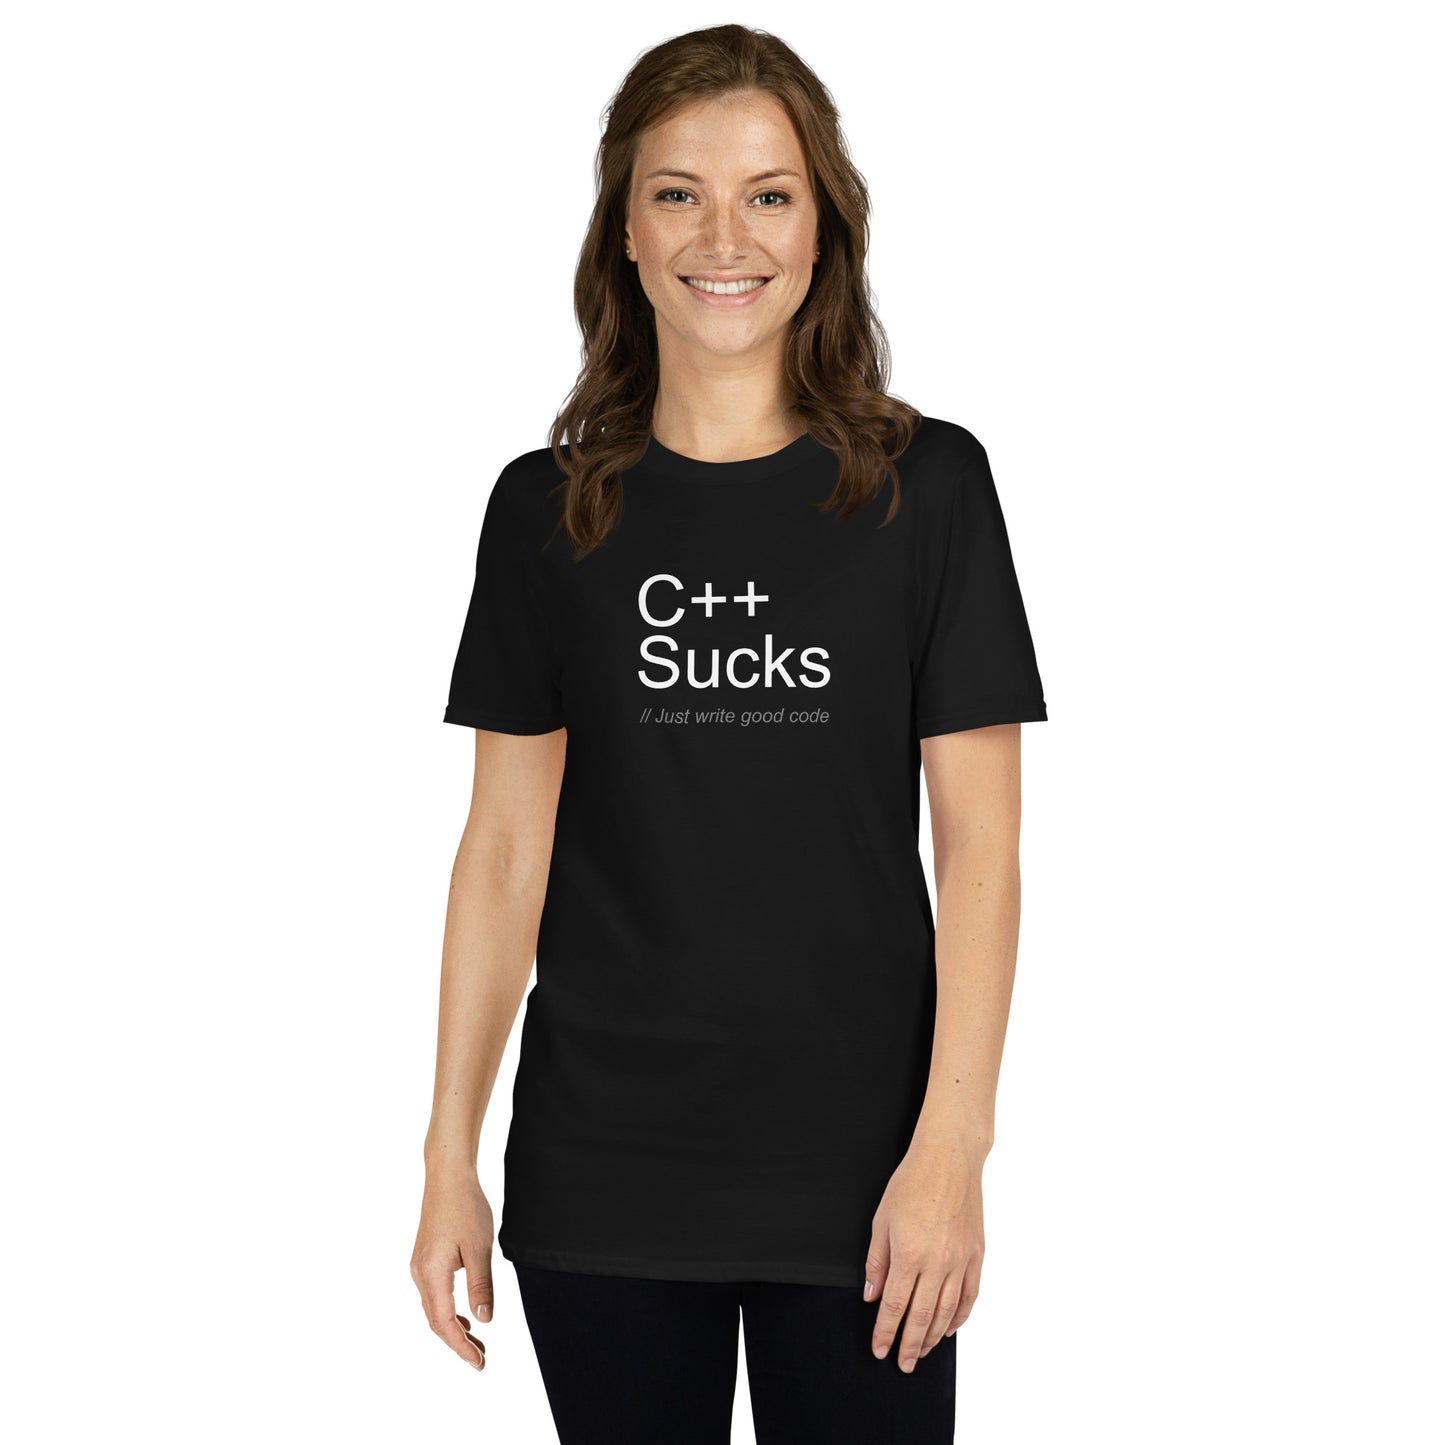 C++ Sucks